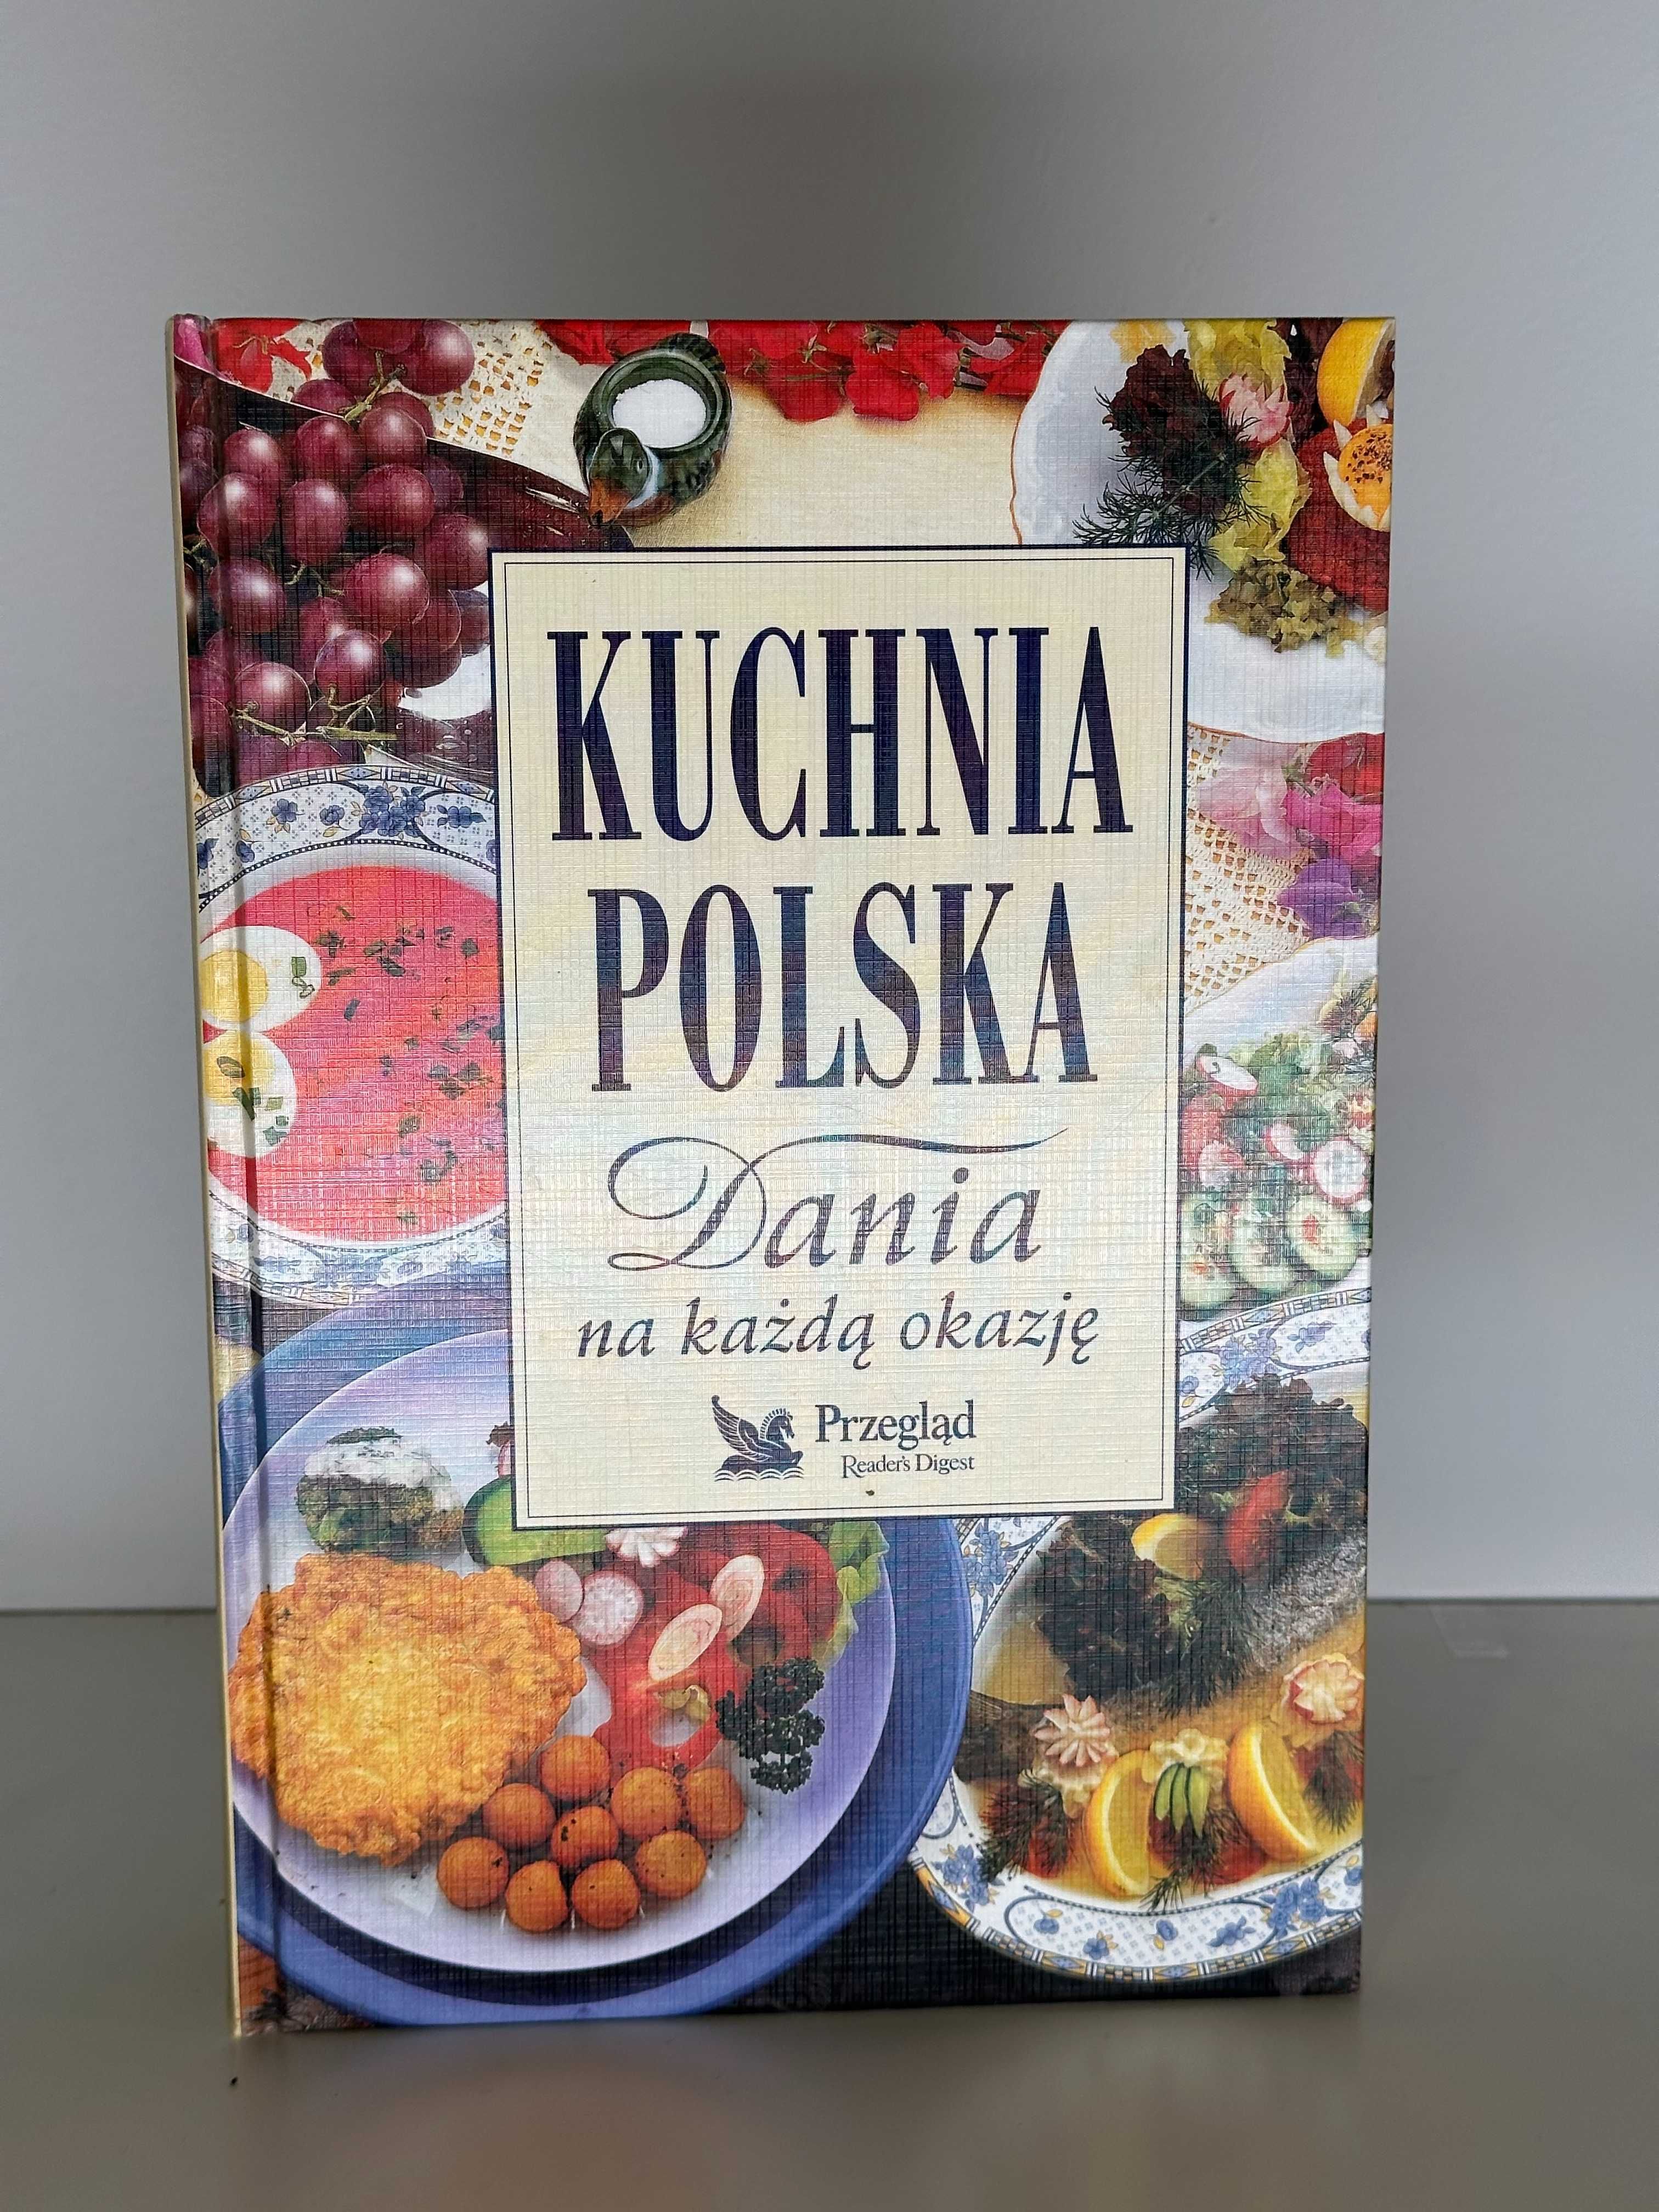 Readers Digest - "Kuchnia Polska - Dania na każdą okazję"